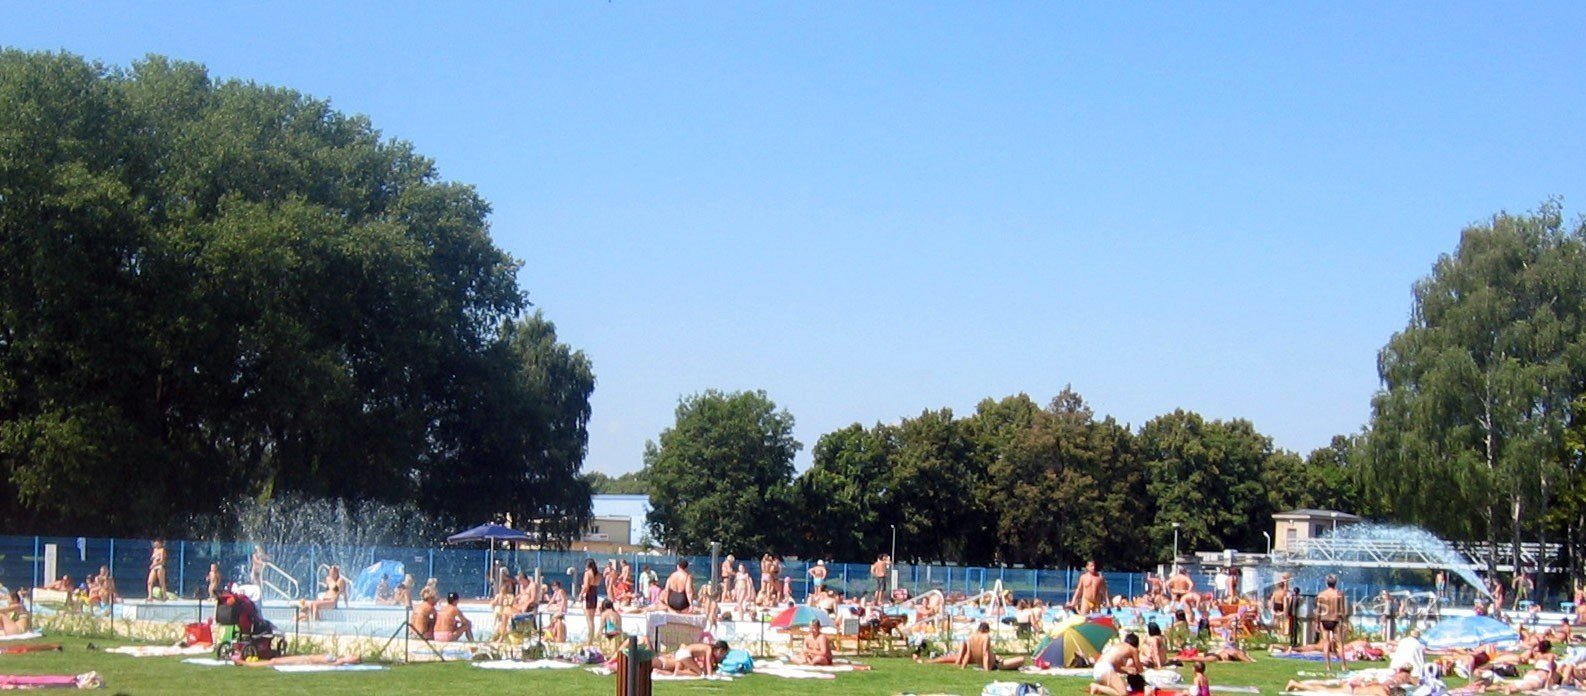 Czeskie Budziejowice - Letni basen